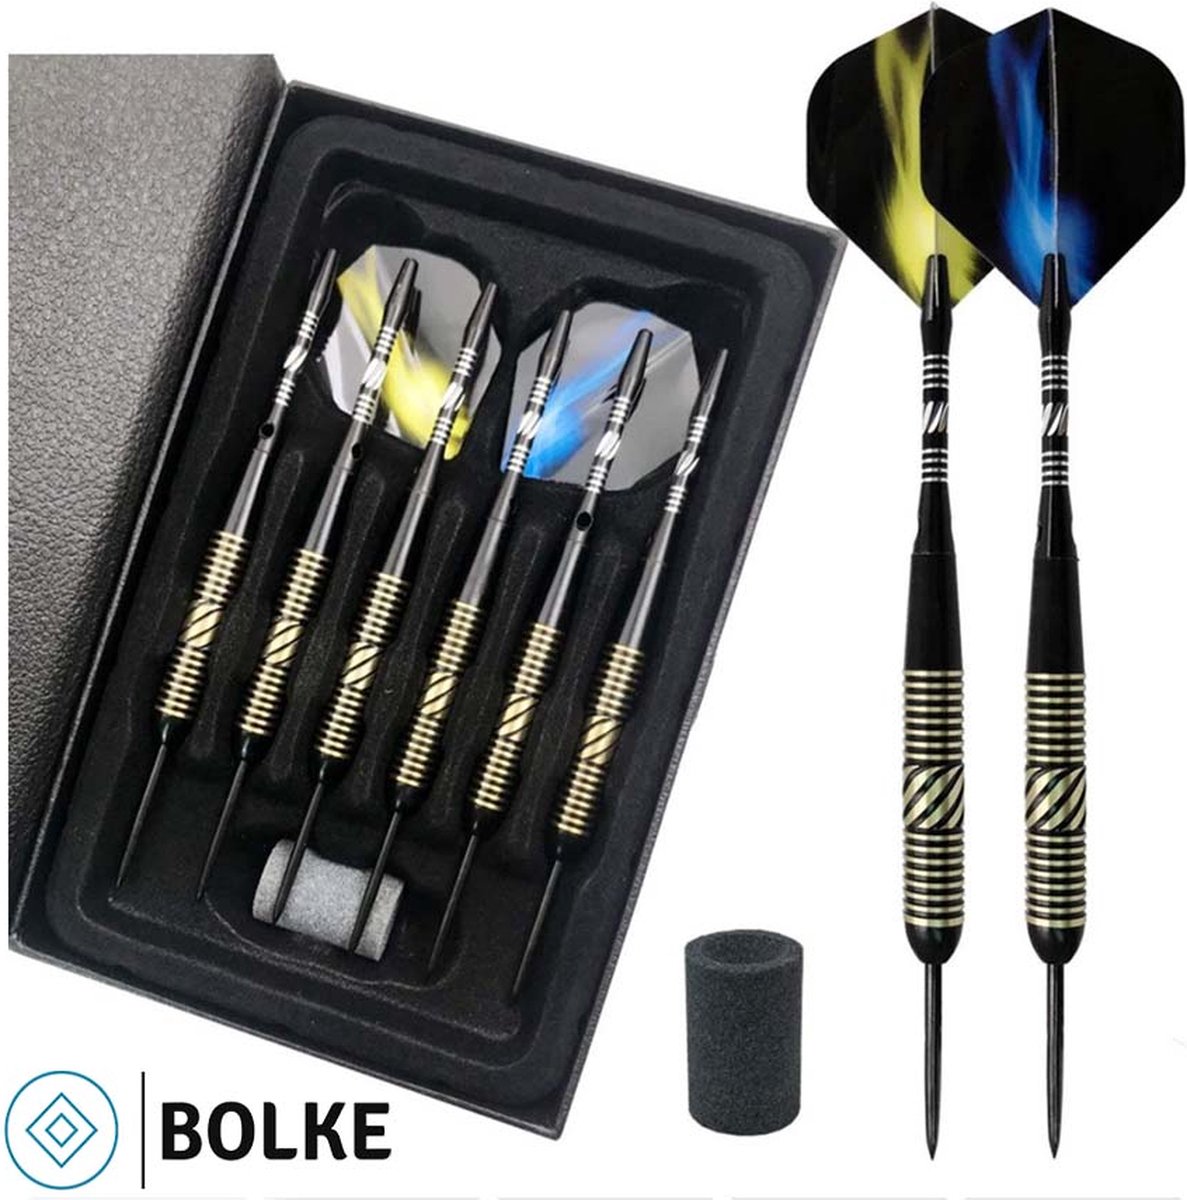 Bolke® - Dartpijlen - Dartpijlen 23 gram - Dart flights - Dartpijlen set van 6 stuks - Hoge kwaliteit - giftbox - Luxe dartpijlen - Bolke®